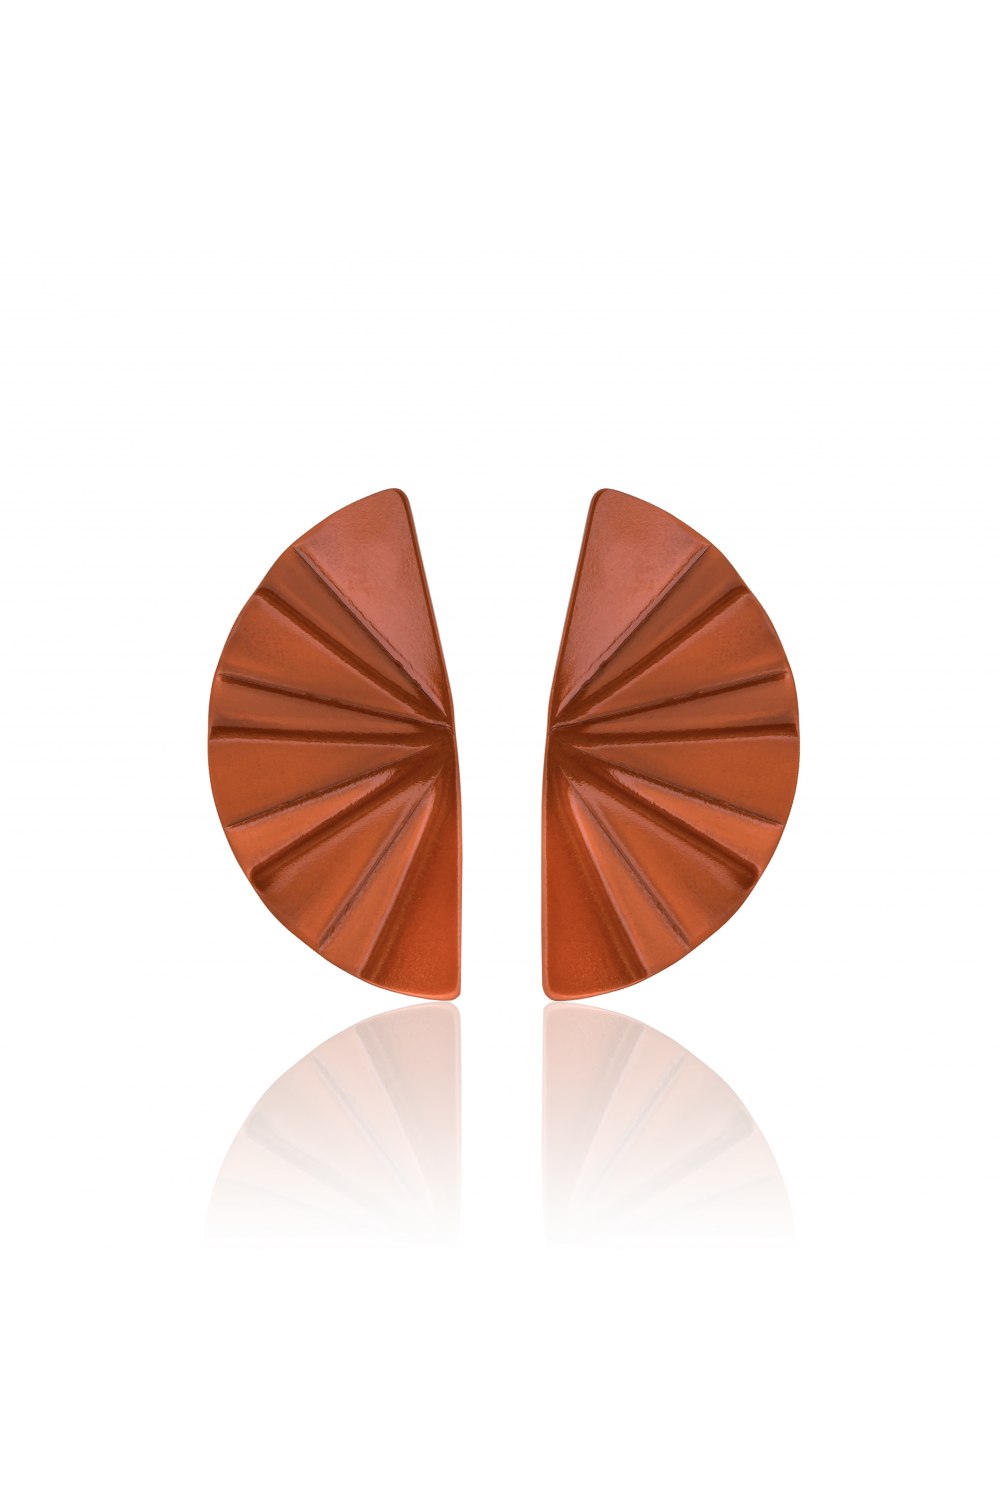 ANASTASIA KESSARIS - Geisha Nanoceramic Orange Titanium Earrings Medium